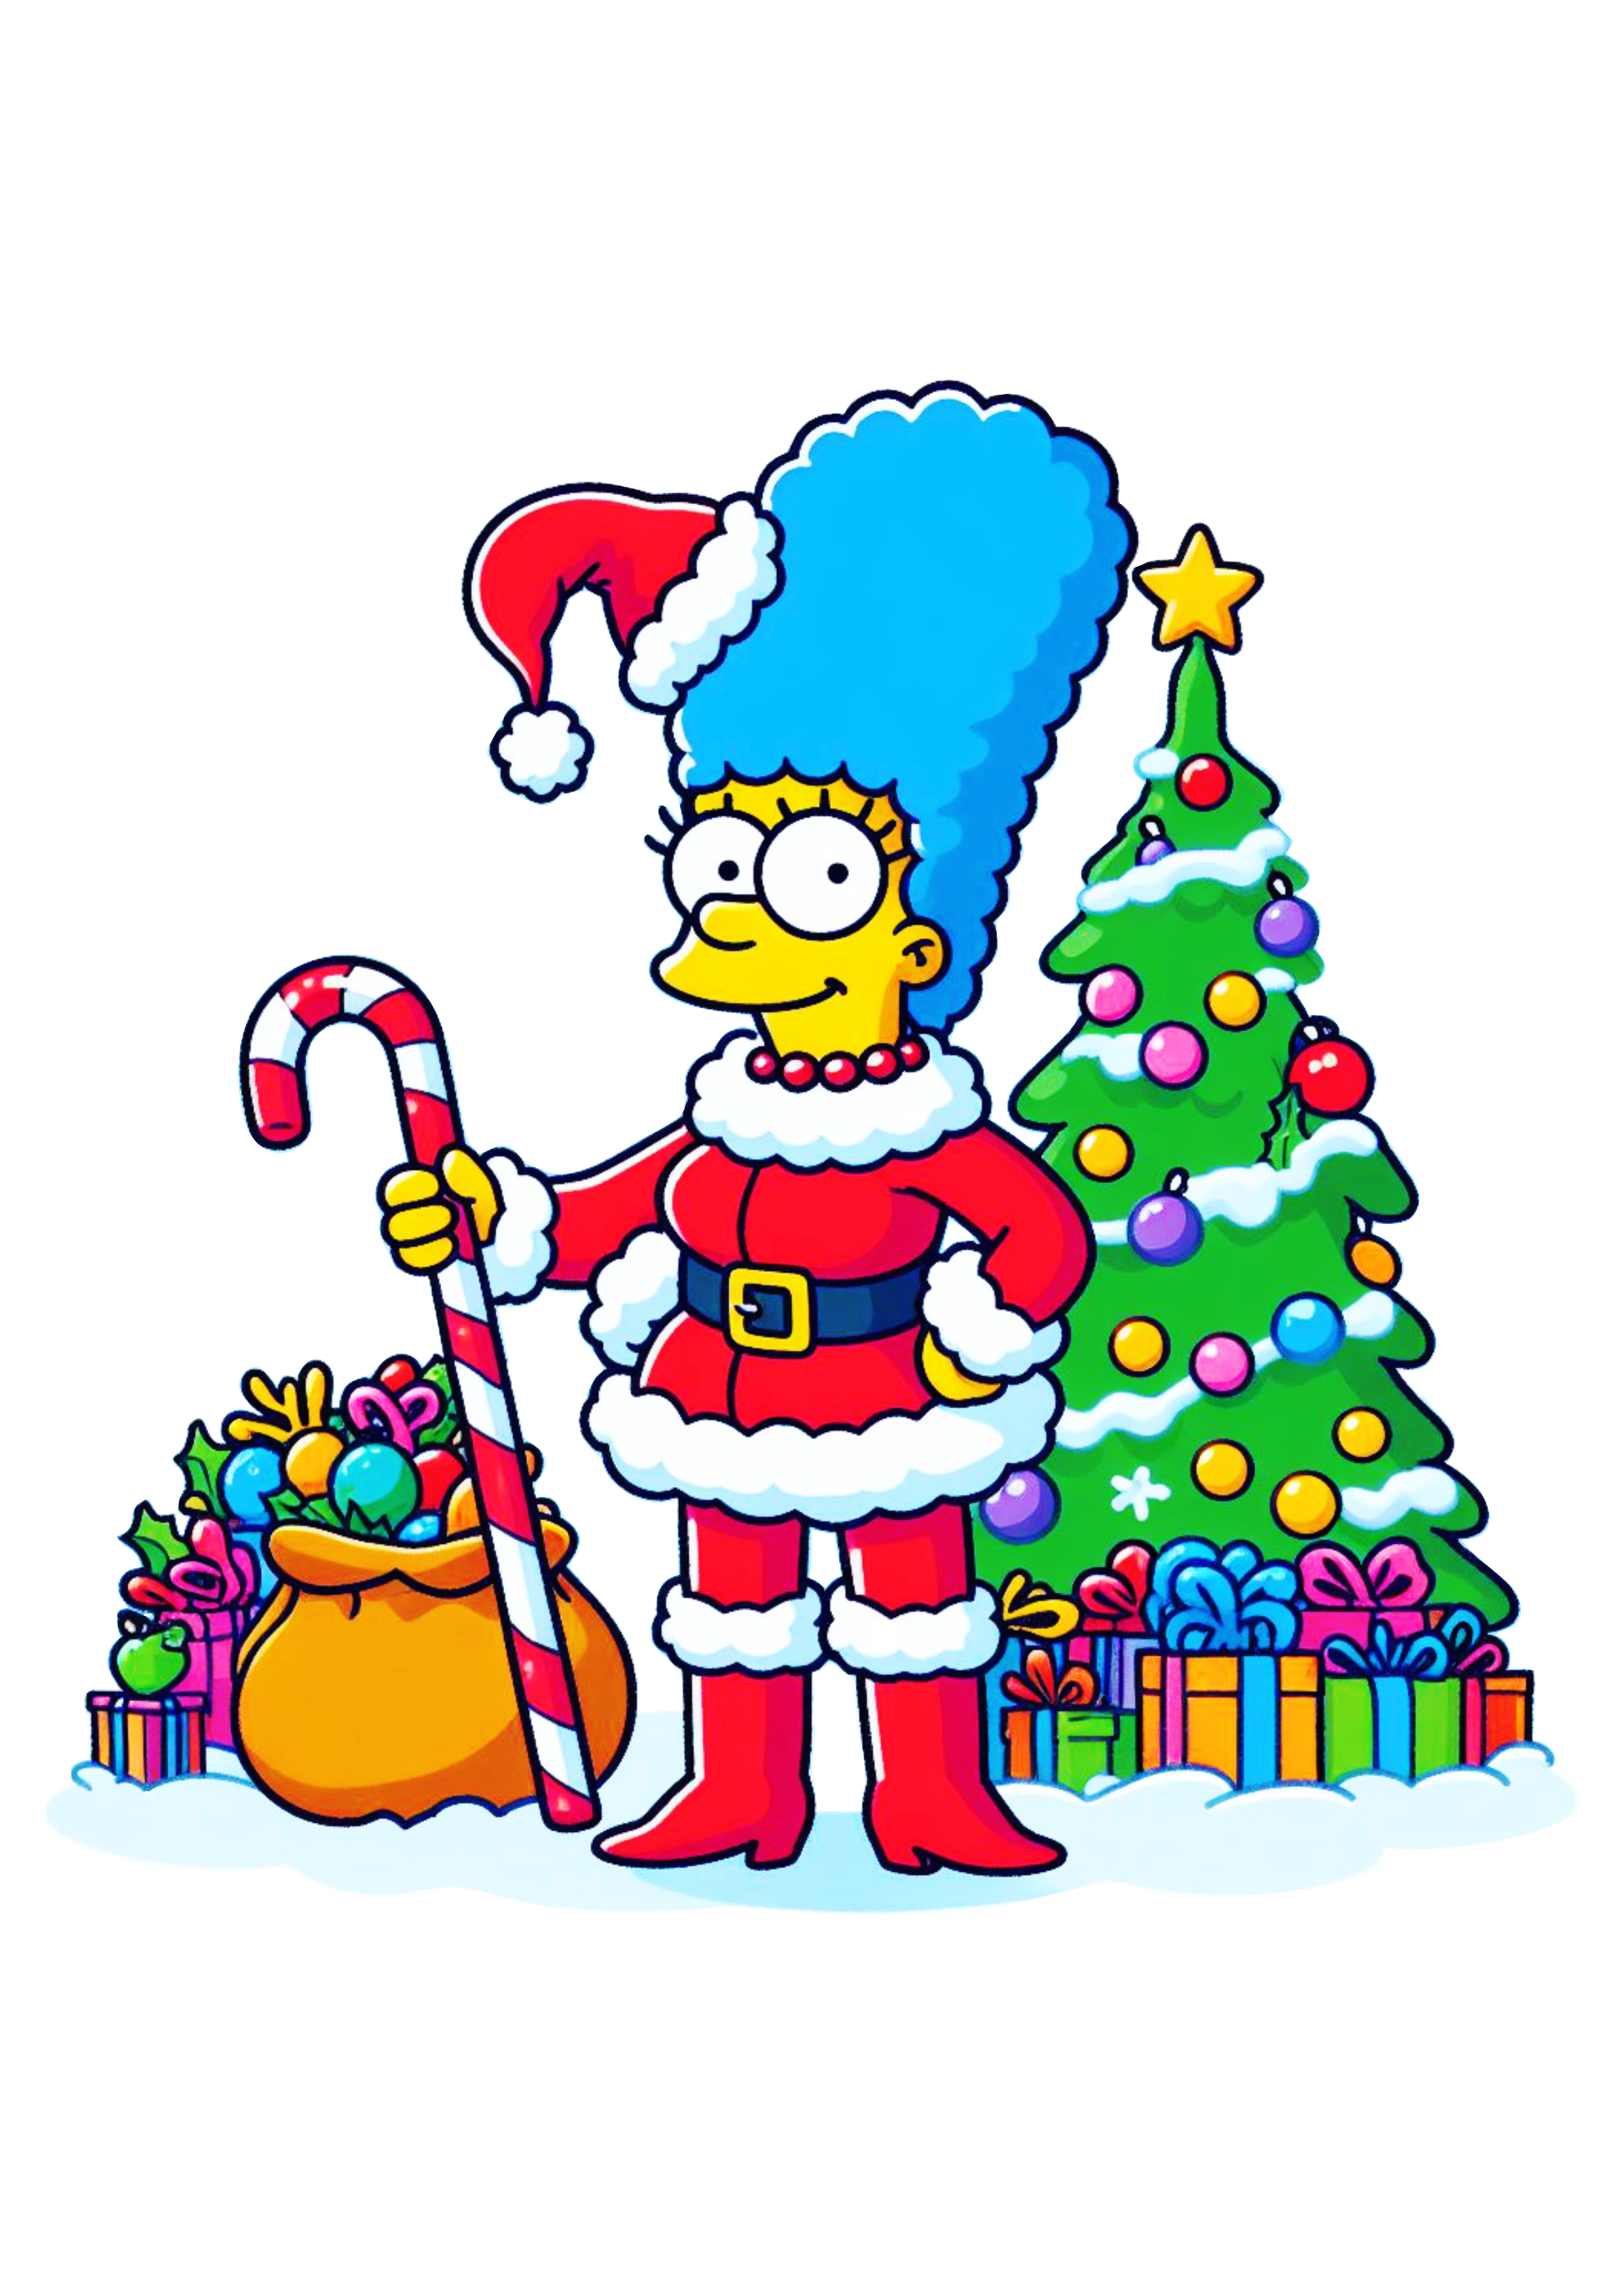 Os simpsons Marge com gorro do Papai Noel decoração de natal desenho infantil fundo transparente árvore de natal e presentes png